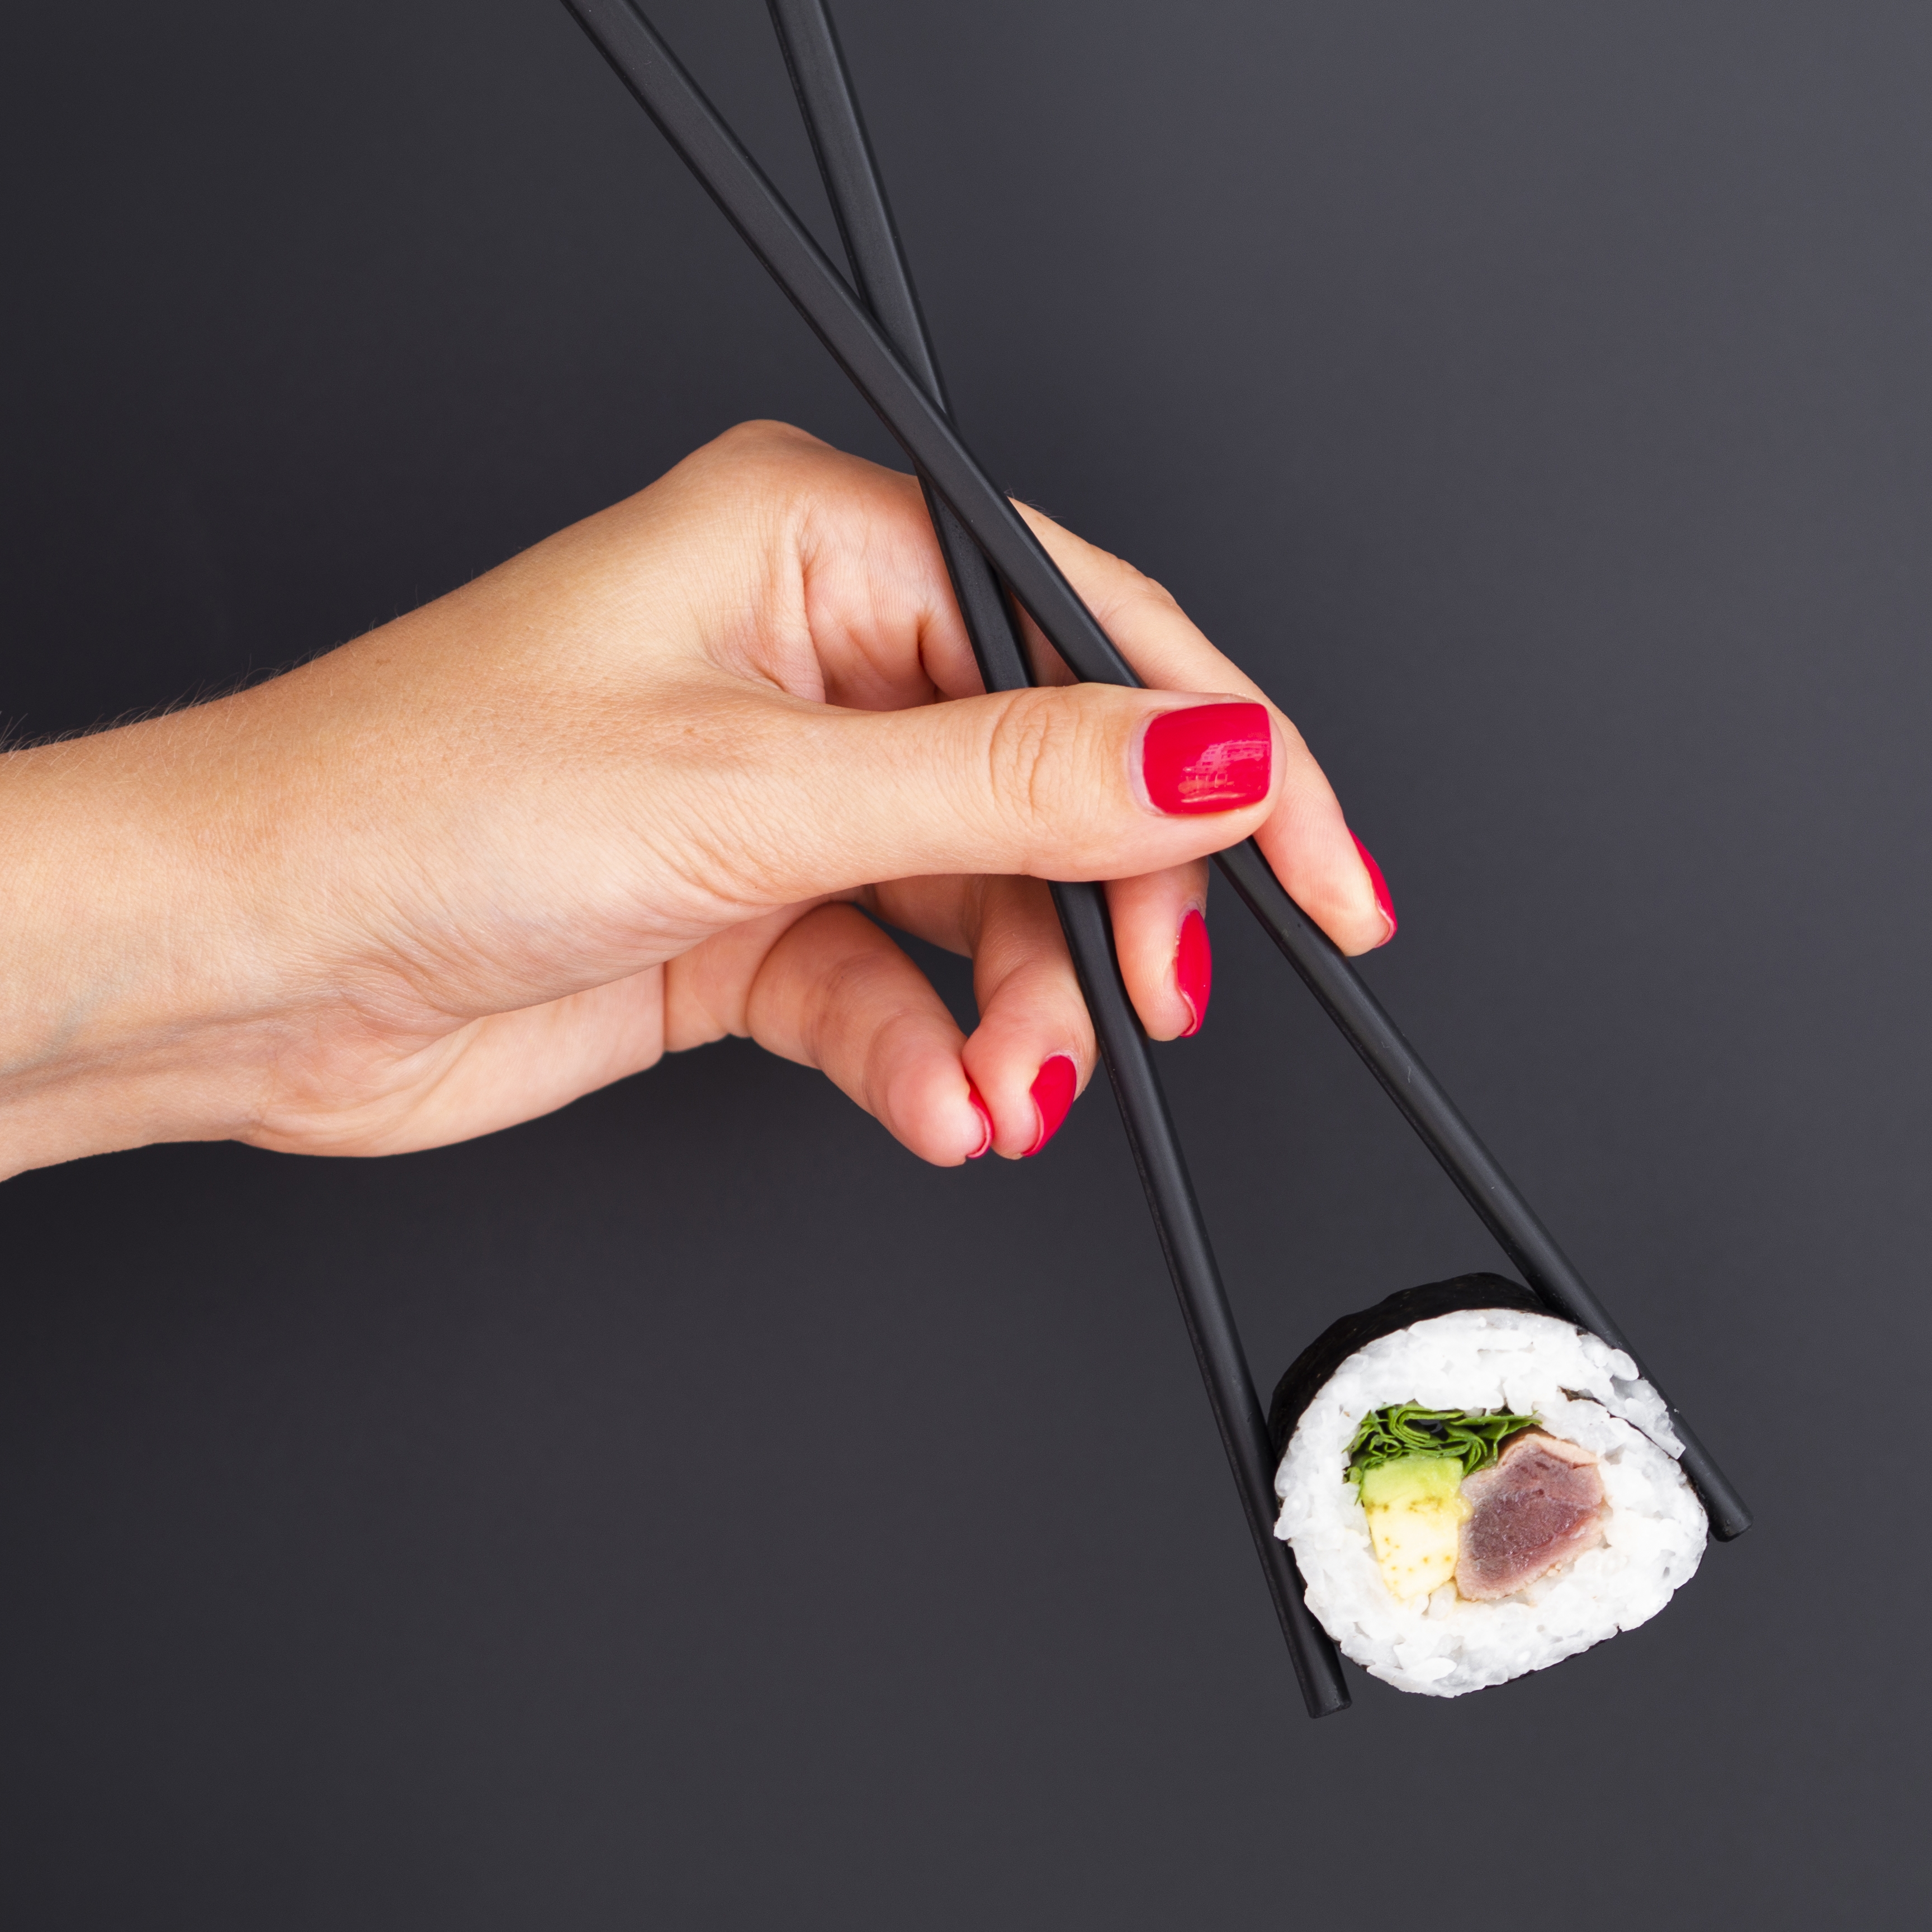 用筷子夹紫菜香肠寿司的女子手 欧莱凯设计网 08php Com